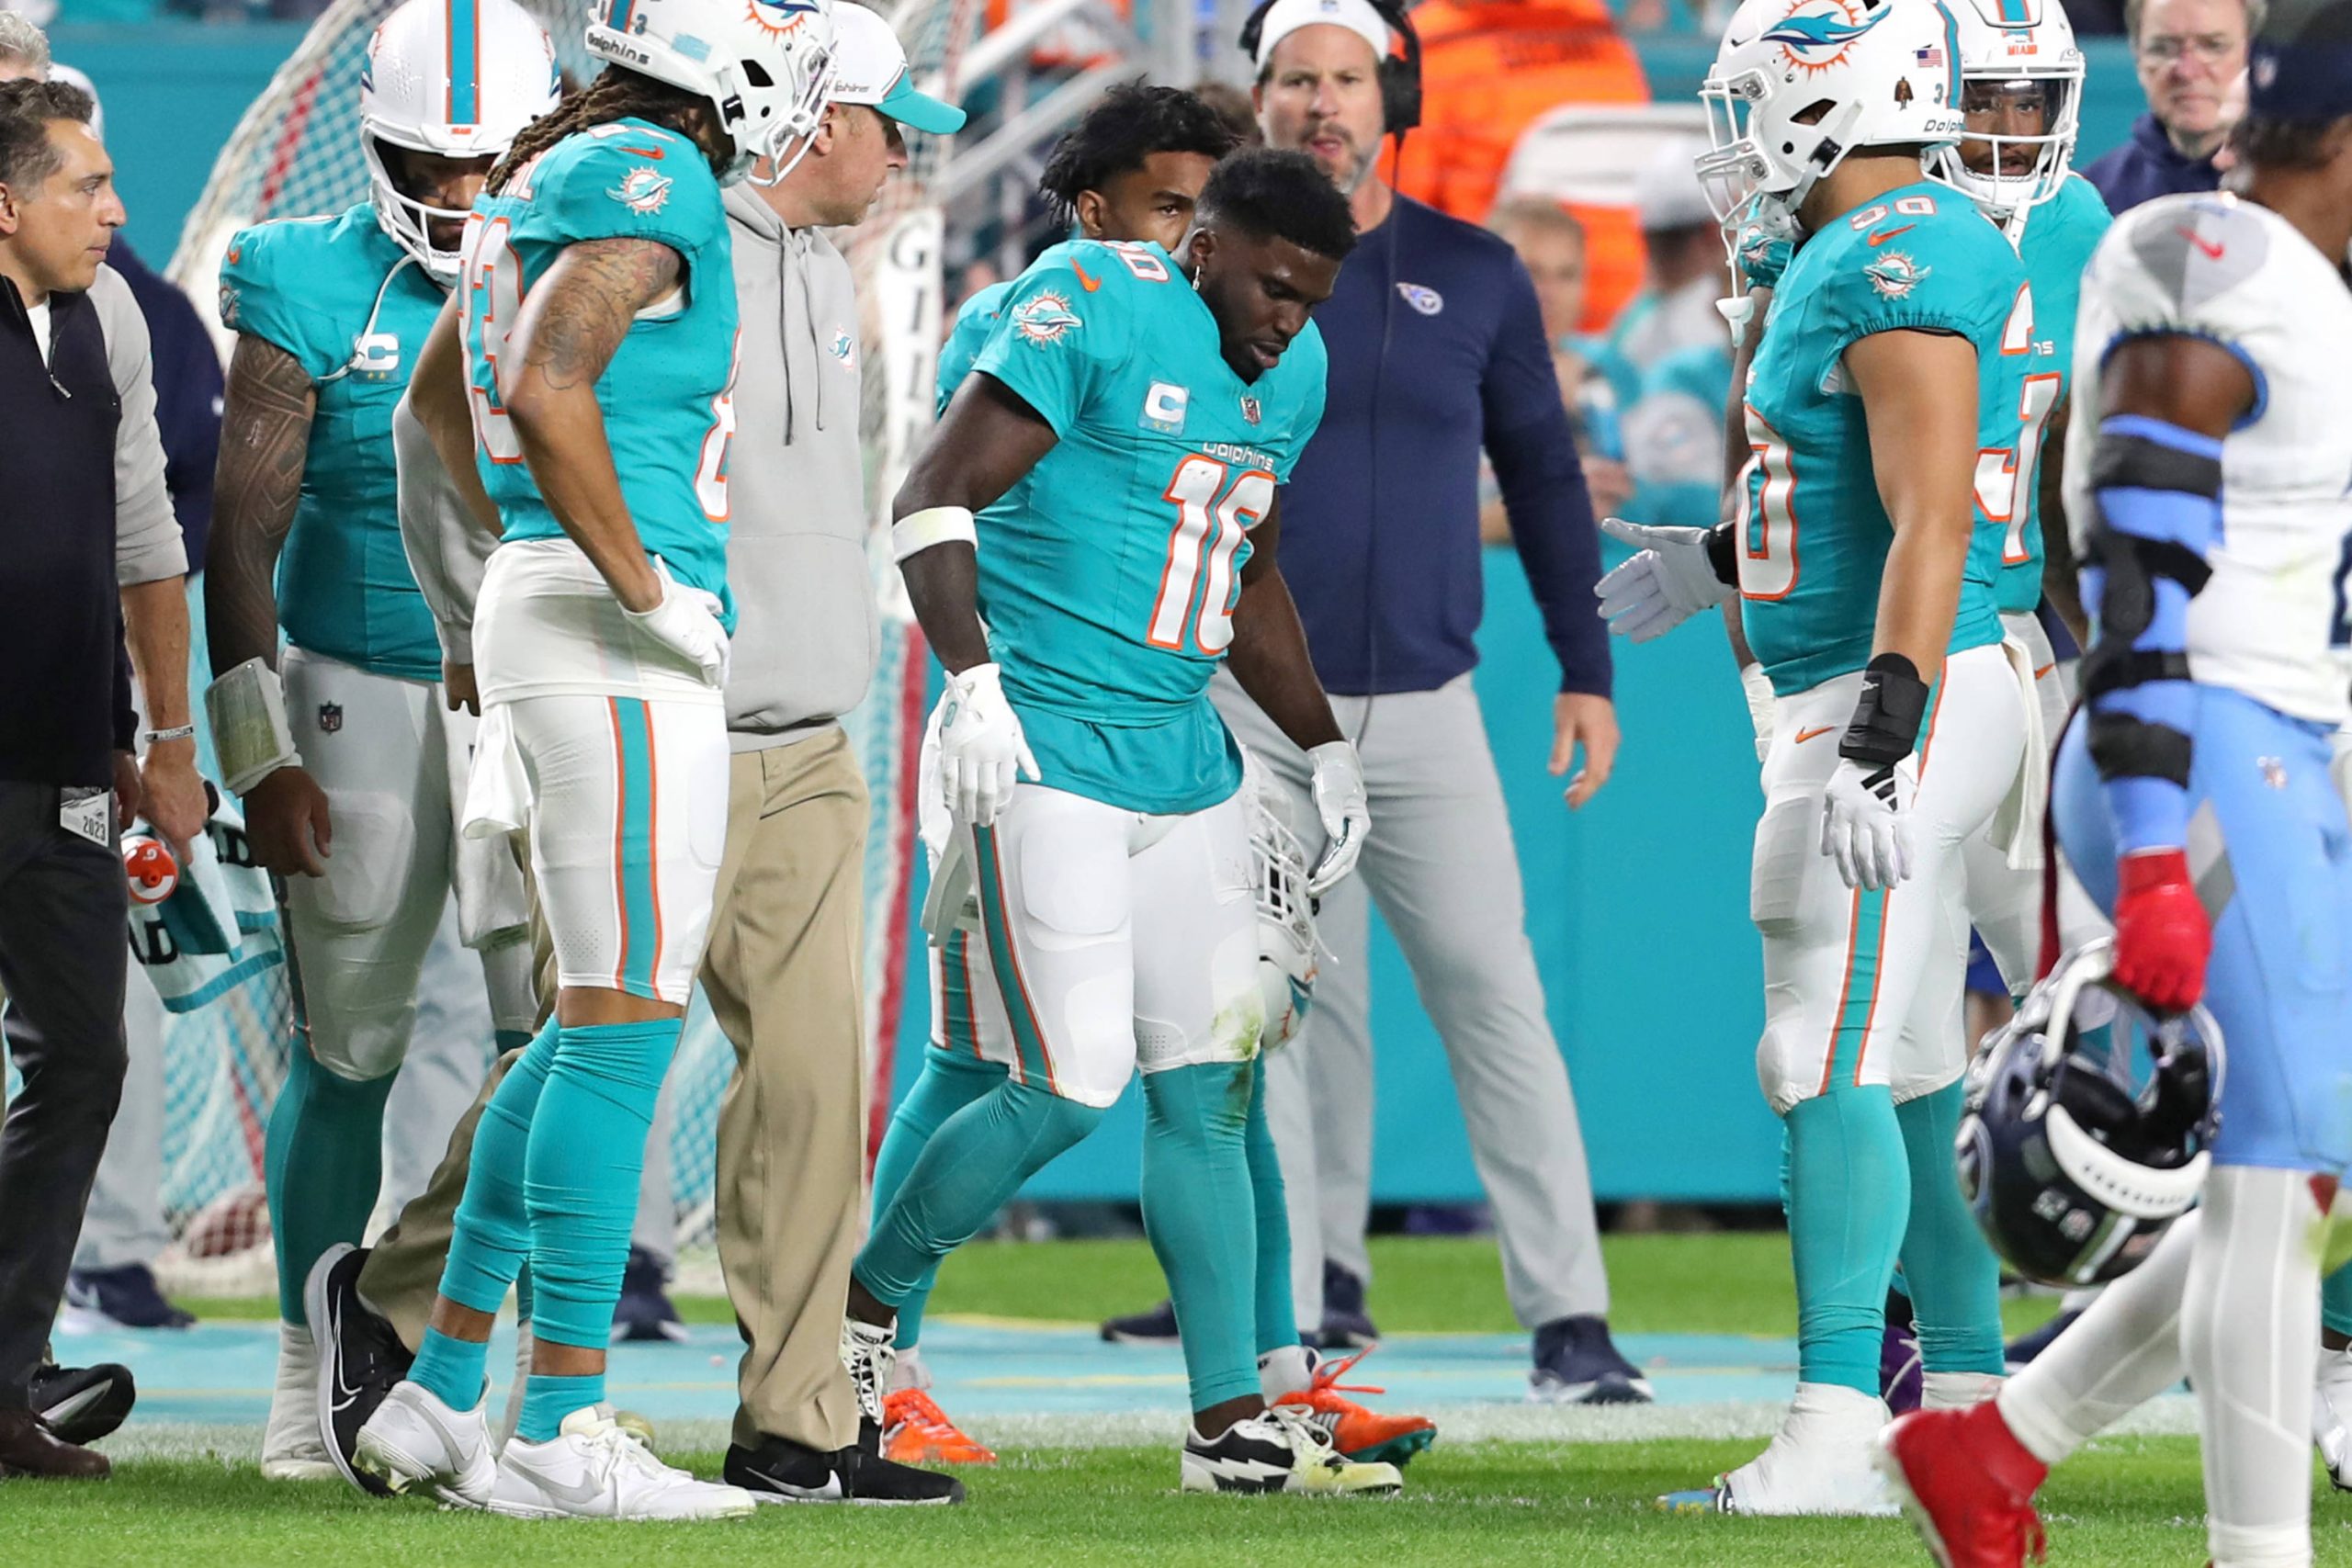 FootballR - NFL - Die Spieler der Miami Dolphins, darunter Tyreek Hill, sind auf dem Spielfeld.